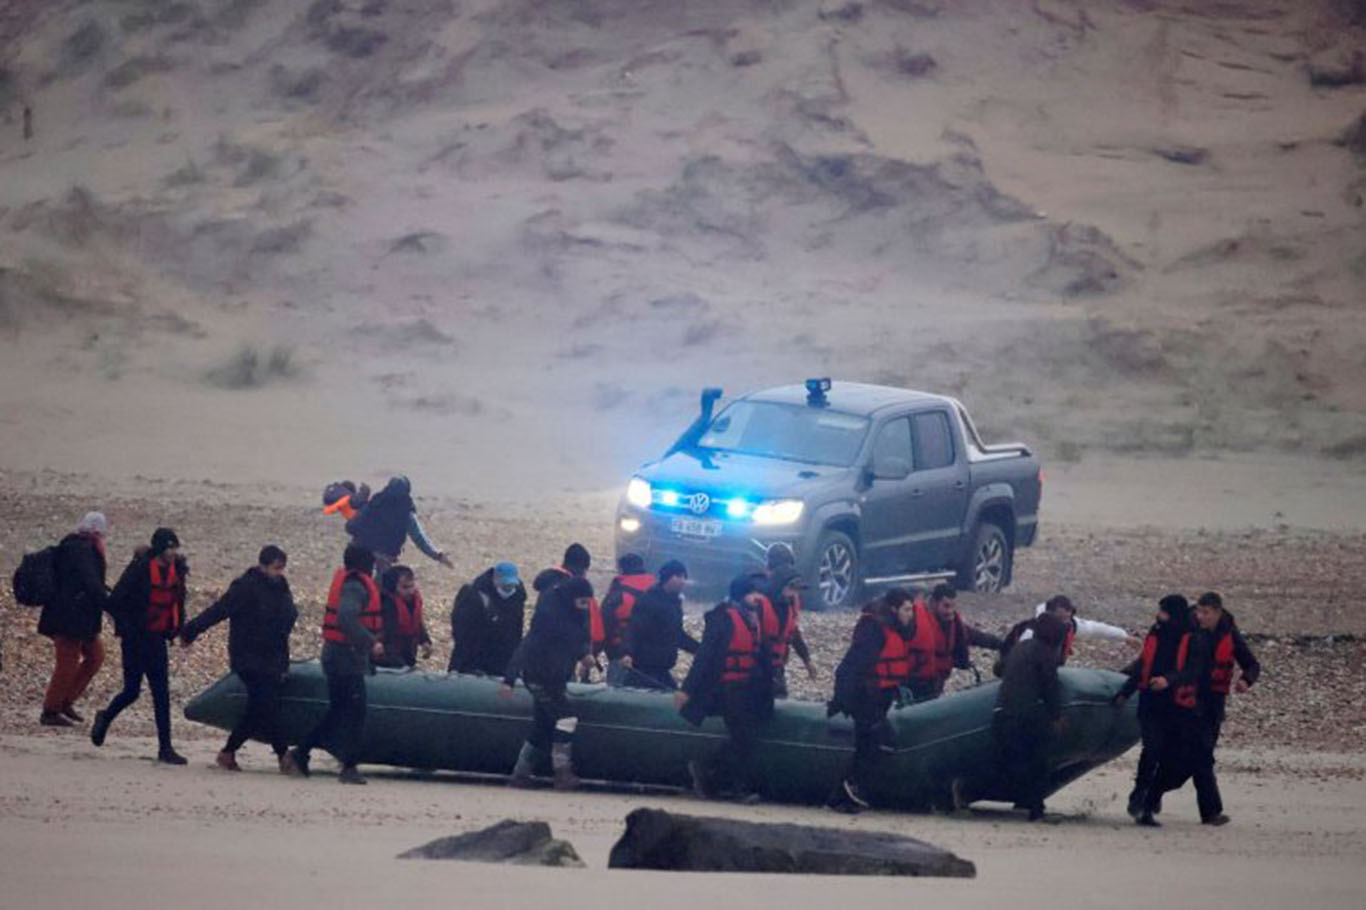 صحيفة لوموند الفرنسية: لم تستجب فرنسا لطلب المساعدة أثناء غرق الـ 27 مهاجراً في بحر المنش